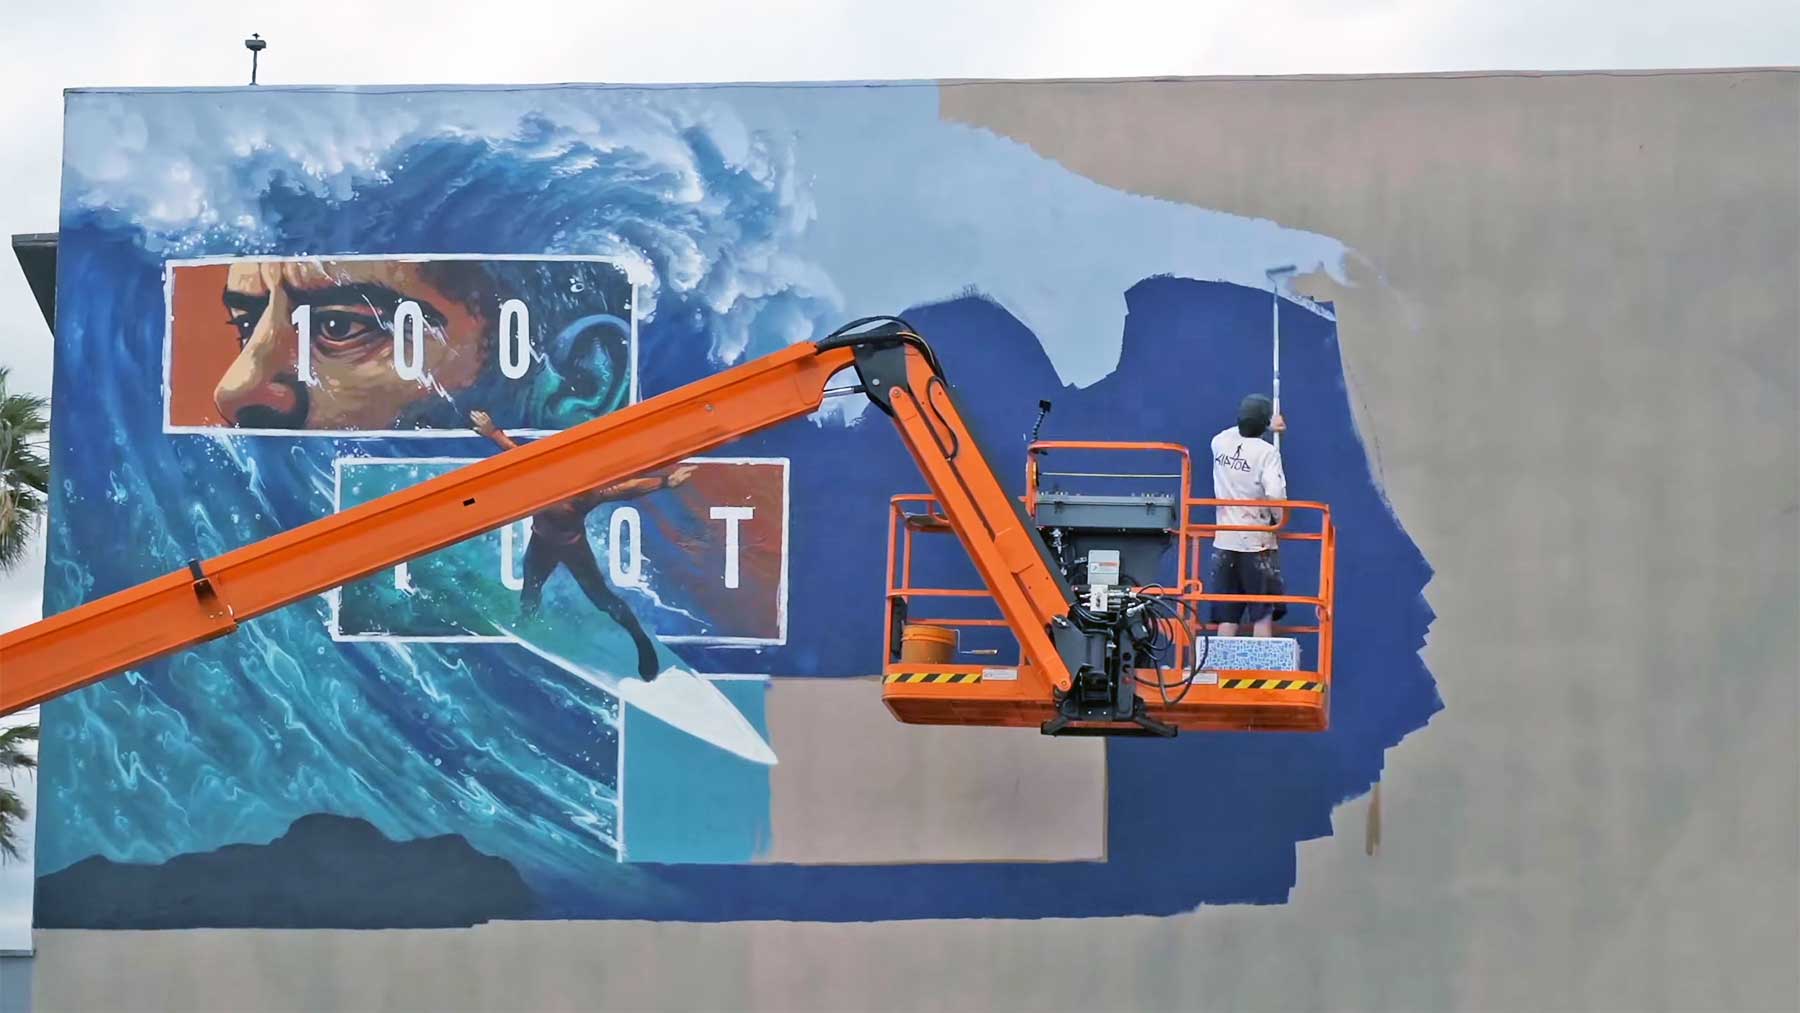 Wie Kiptoe ein gigantisches "100 Foot Wave"-Mural erstellt hat 100-foot-wave-mural-making-of-hbo 